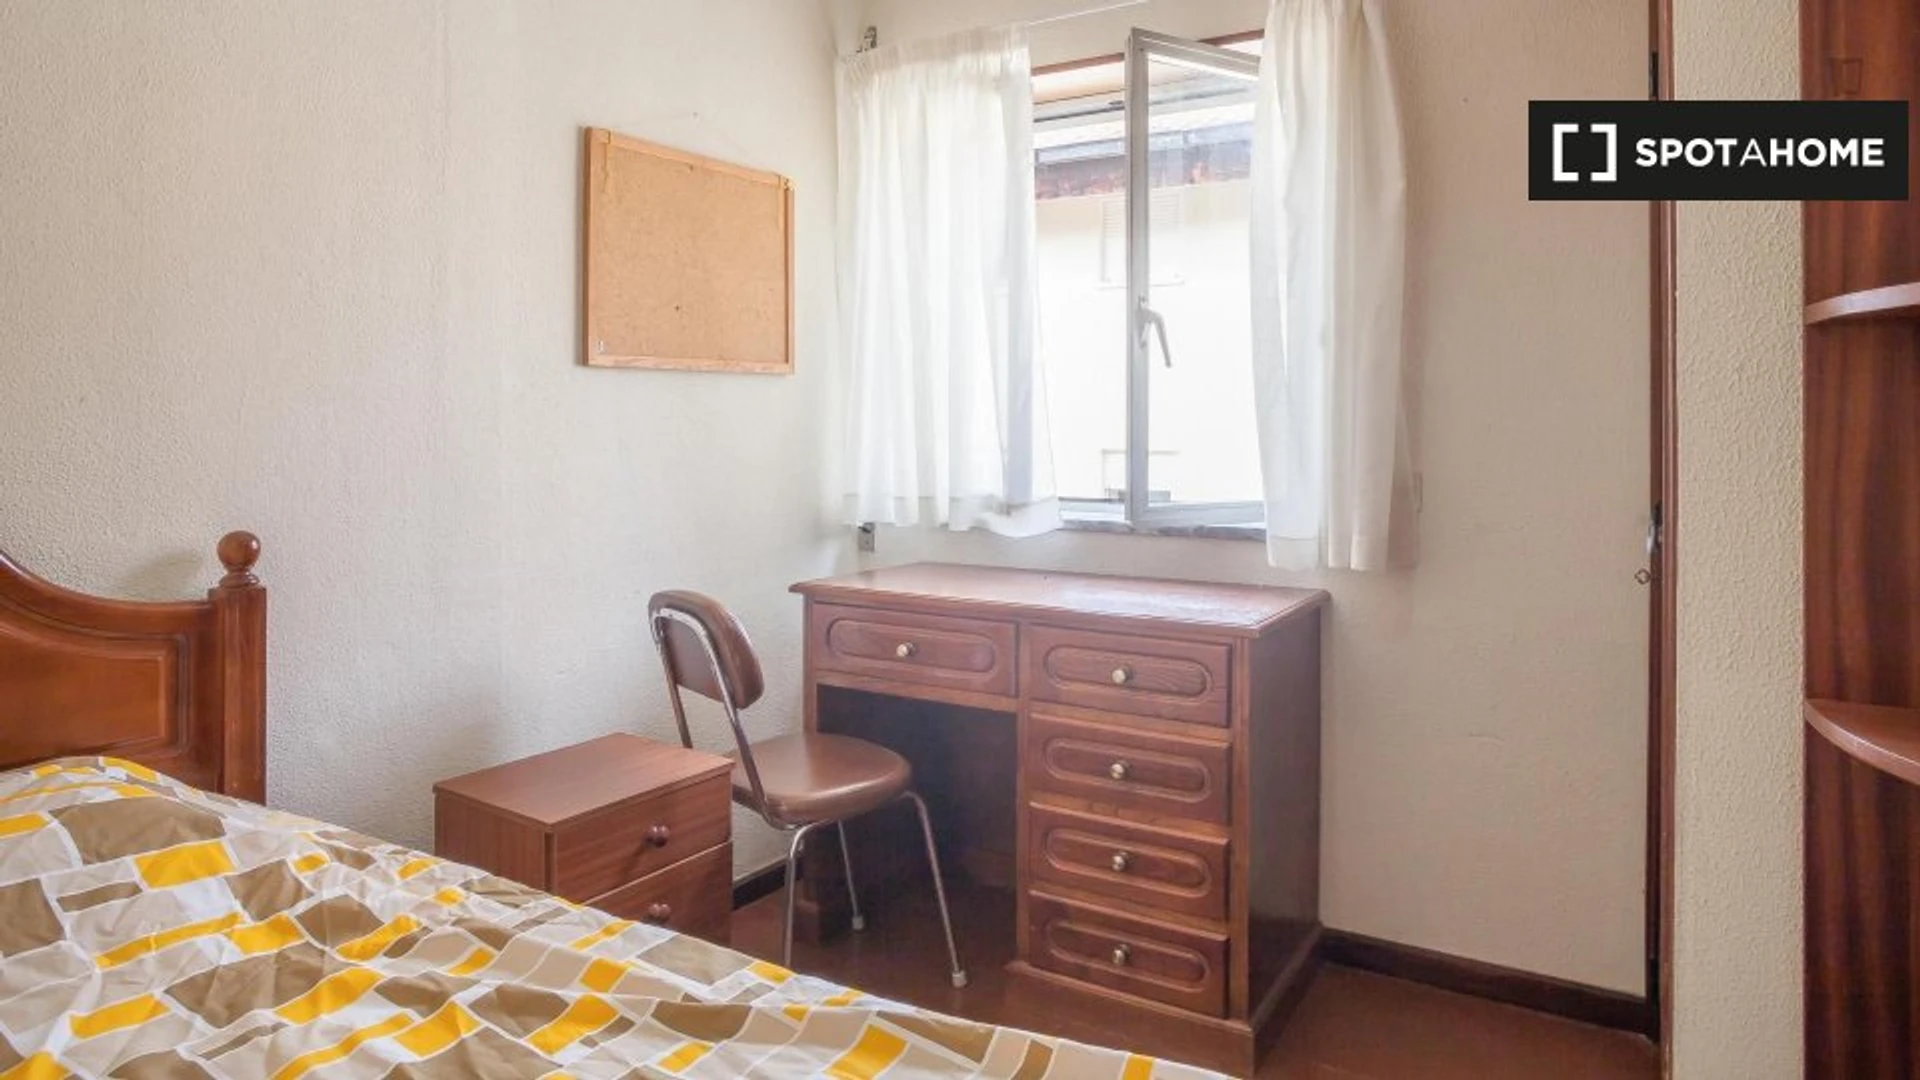 Pokój do wynajęcia z podwójnym łóżkiem w Coimbra